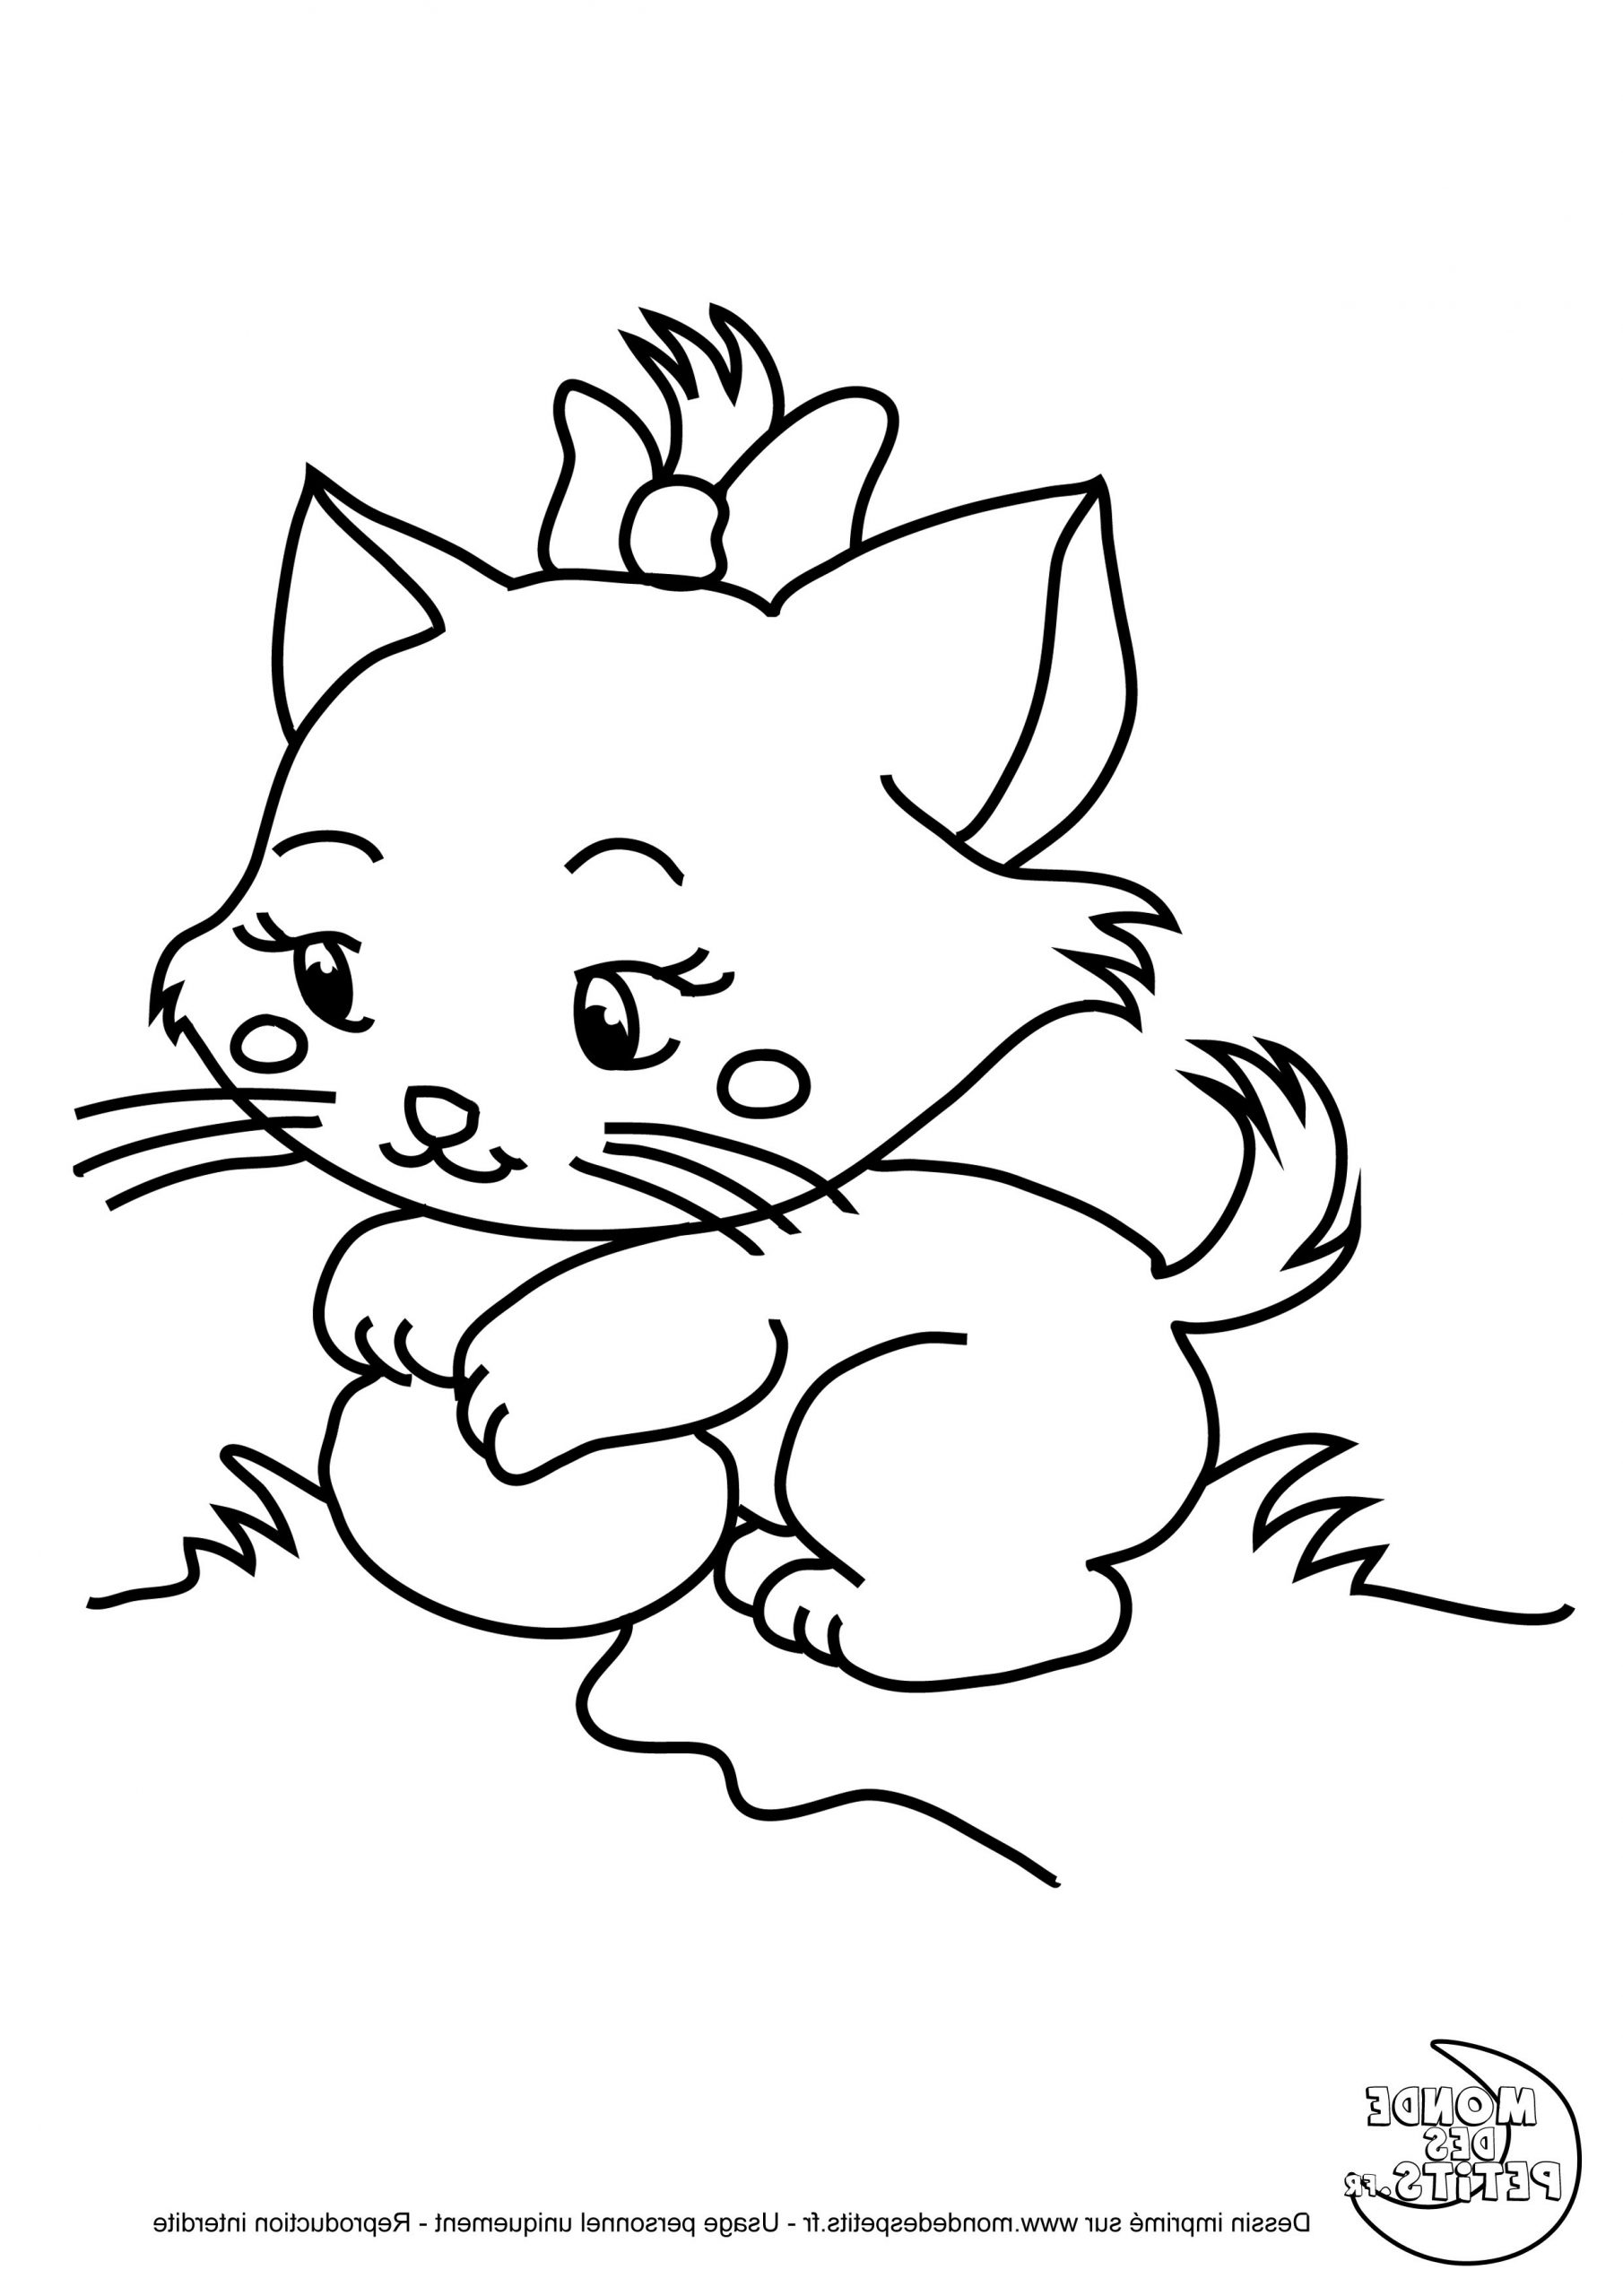 coloriage de tete de tigre dessin chat facile tete